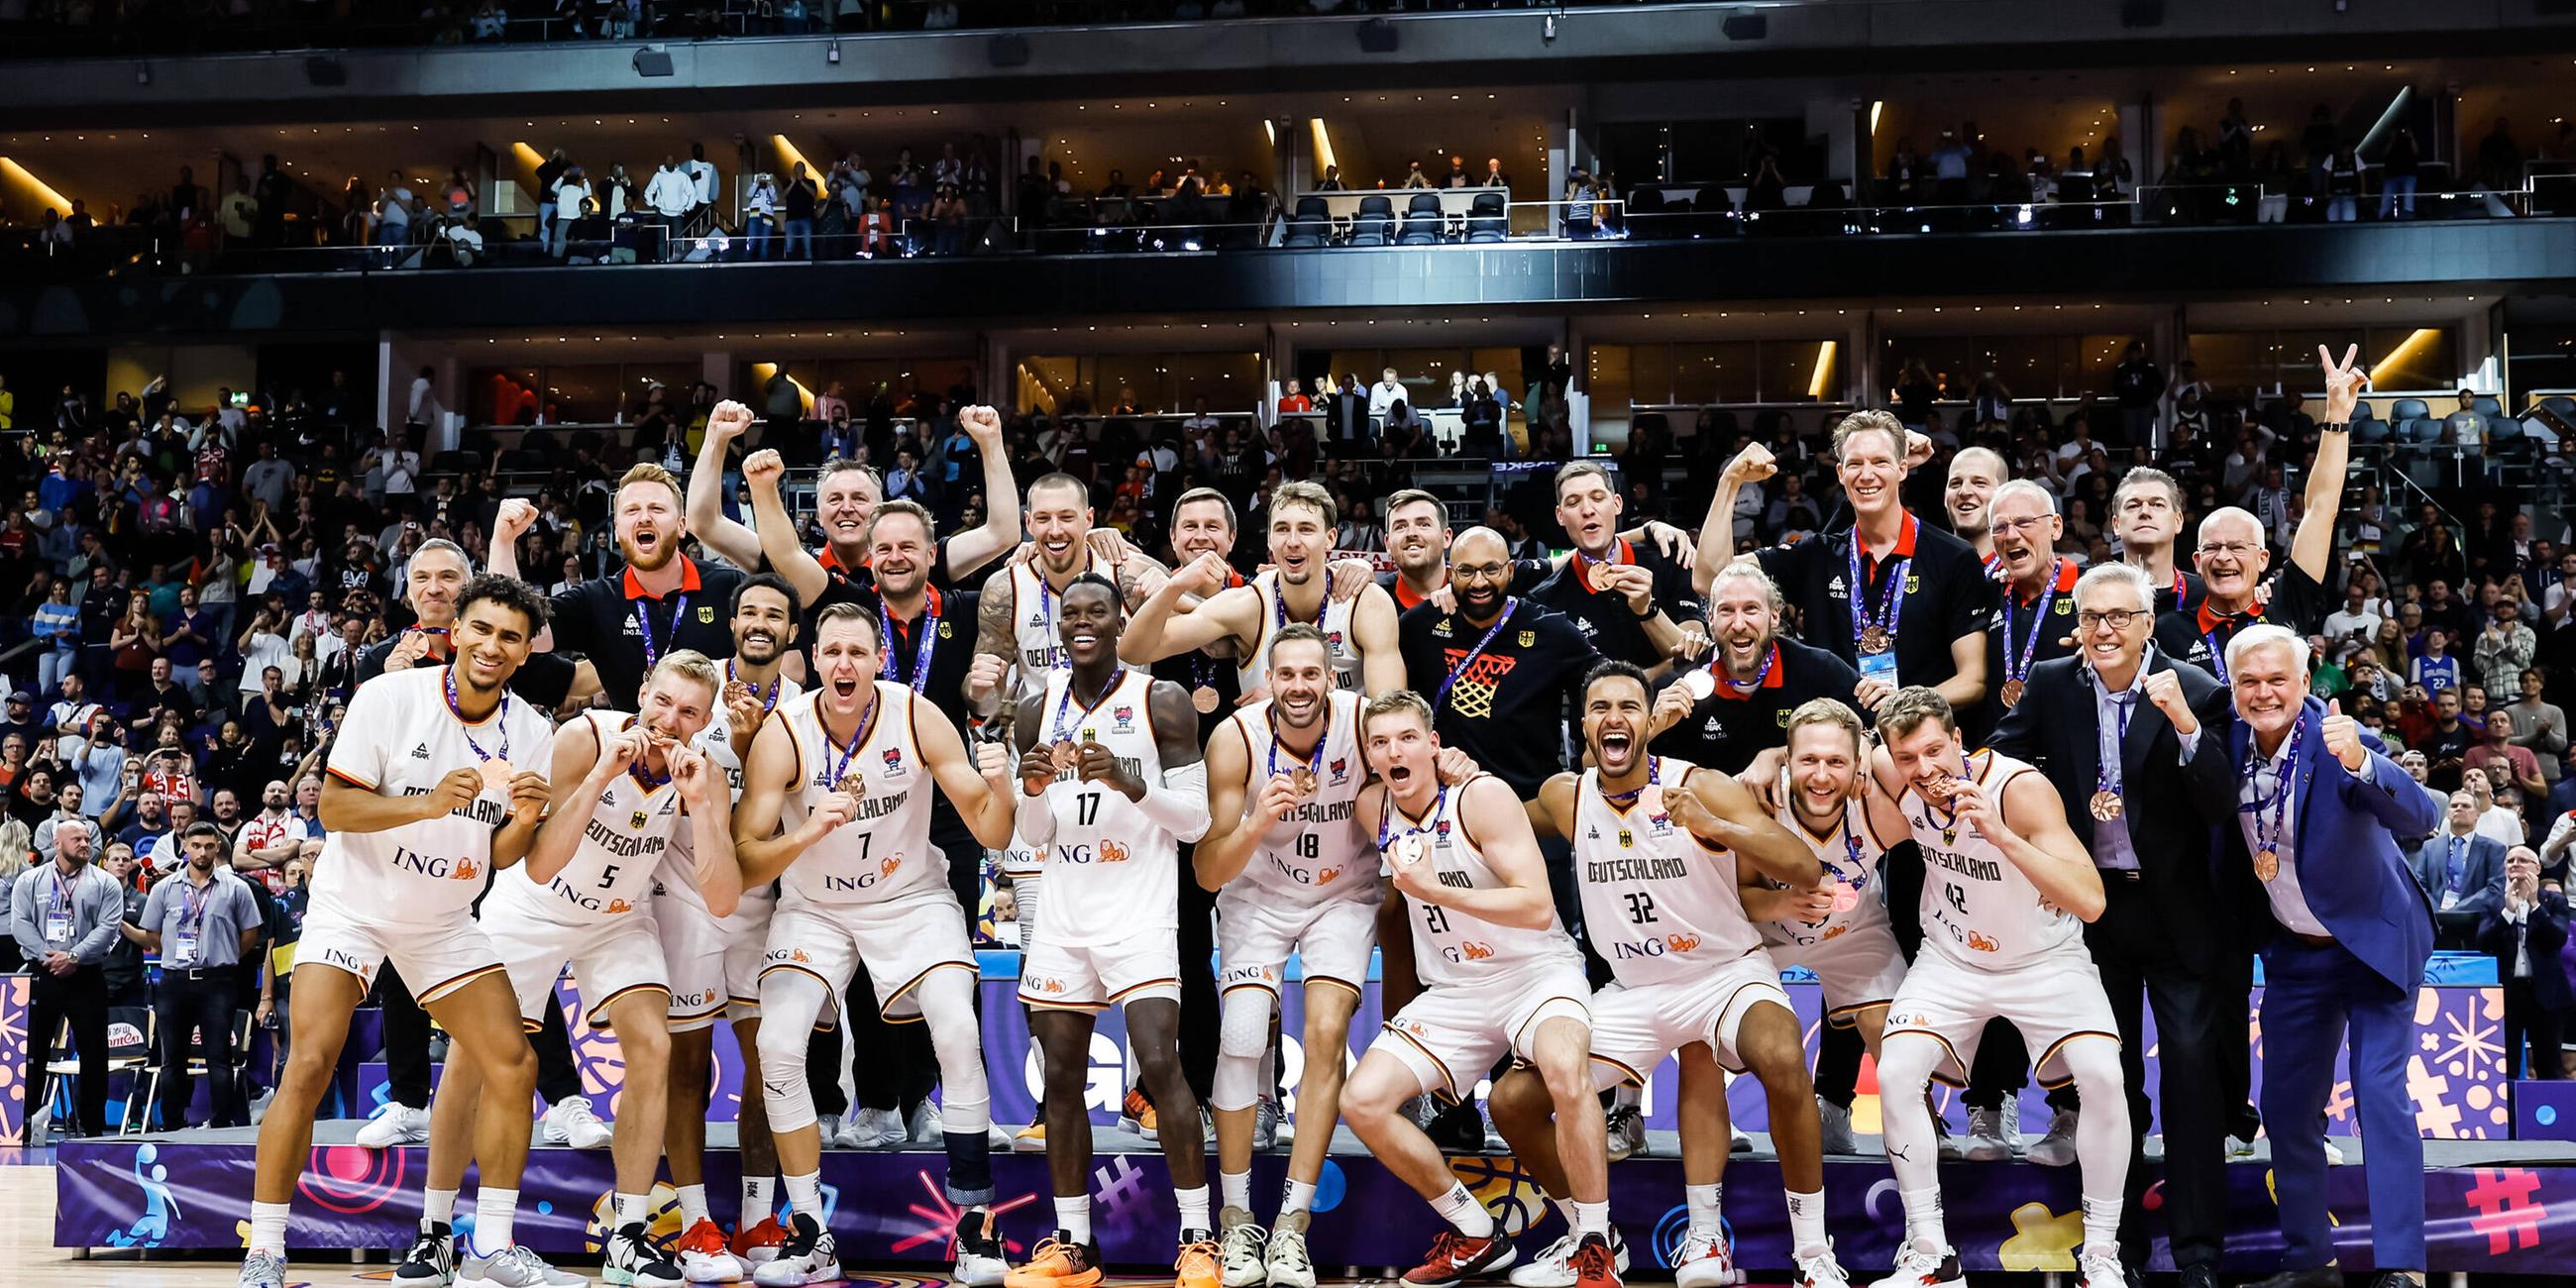 Bilder des Jahres: Die deutschen Basketballer gewinnen Bronze bei der Heim-EM